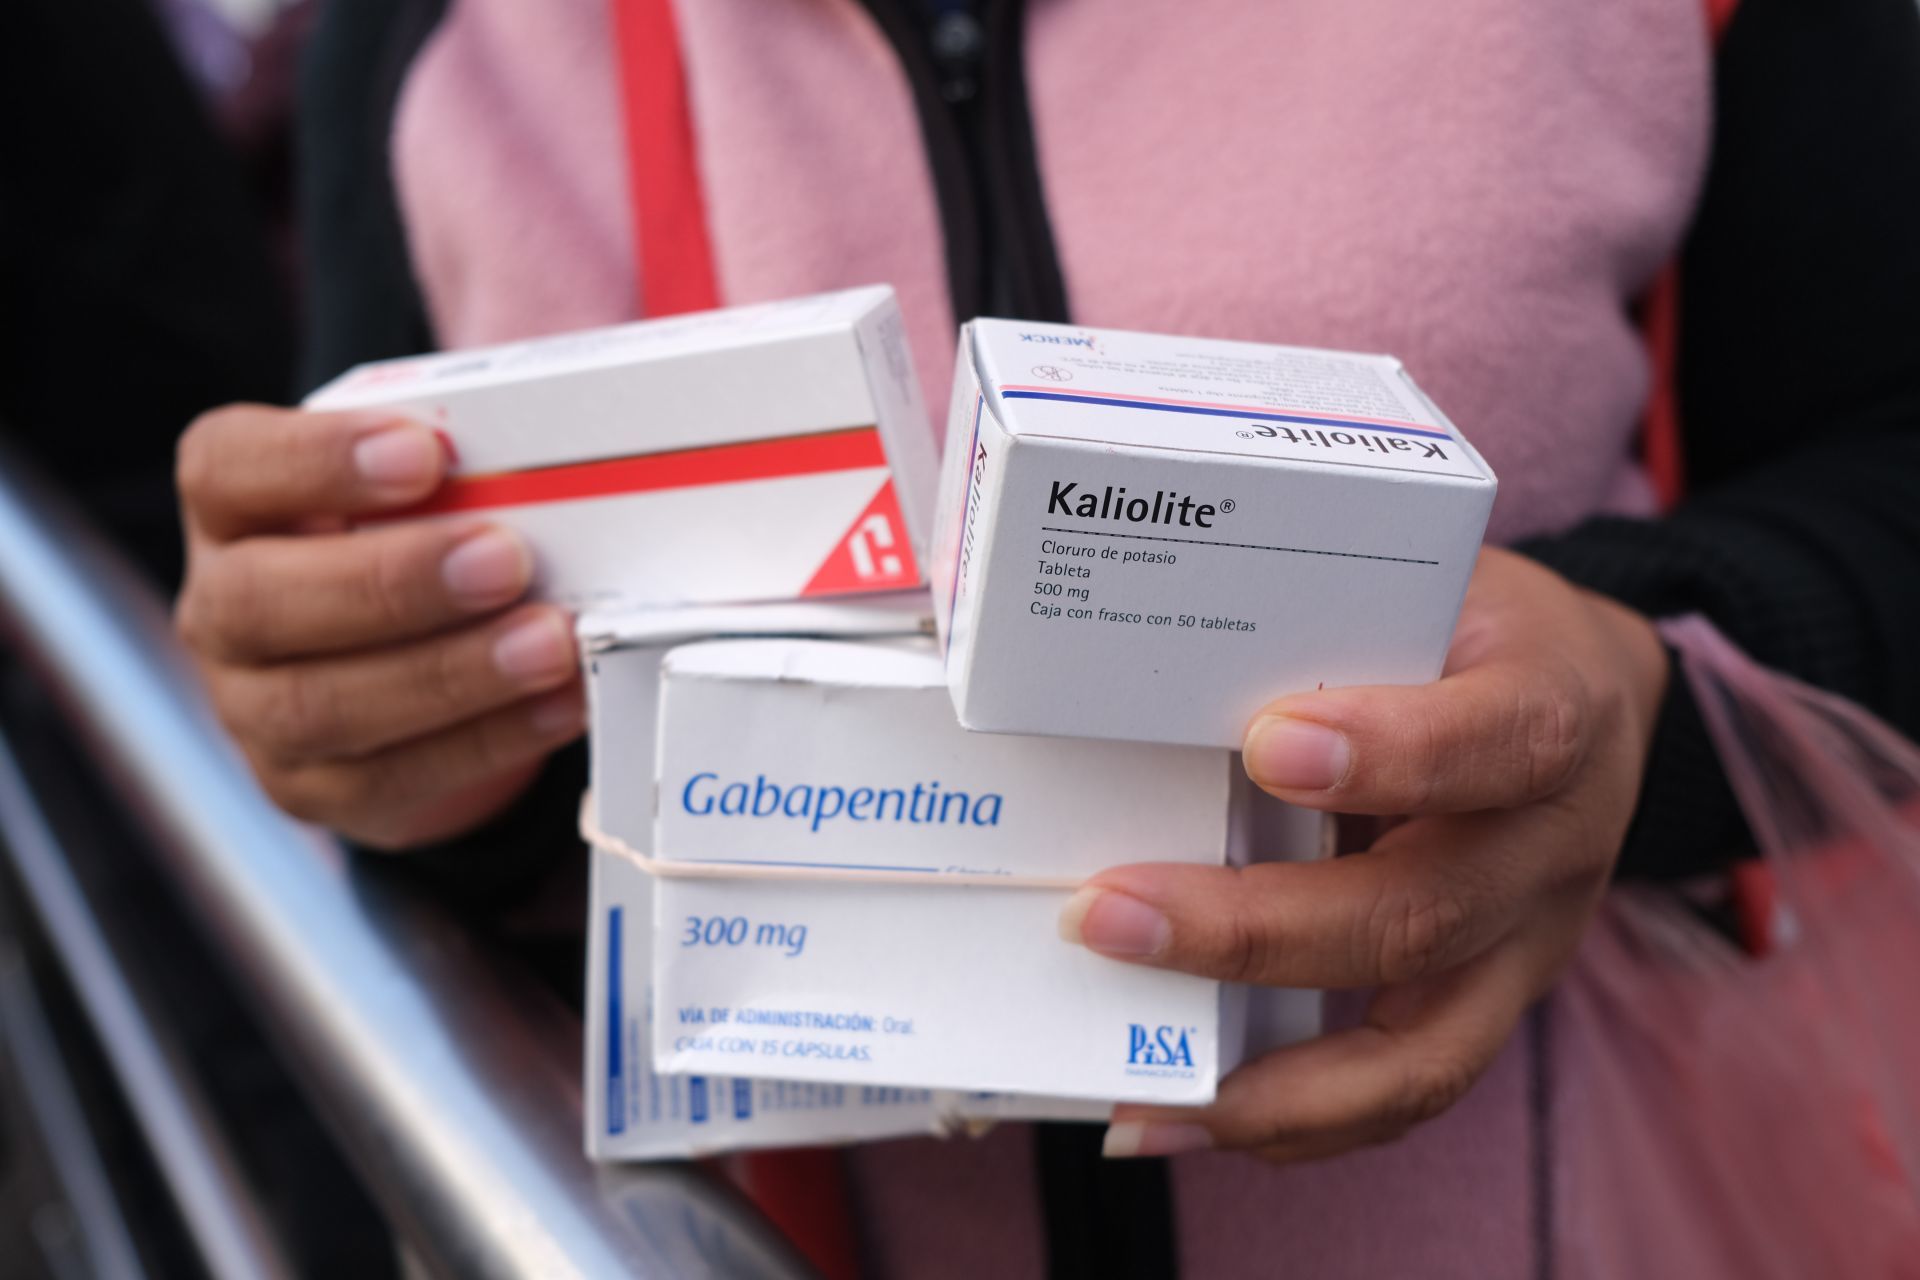 Los medicamentos que caducaron fueron comprados durante la administración del exgobernador Ordaz Coppel entre 2018 y 2021 (FOTO: GRACIELA LÓPEZ /CUARTOSCURO.COM)